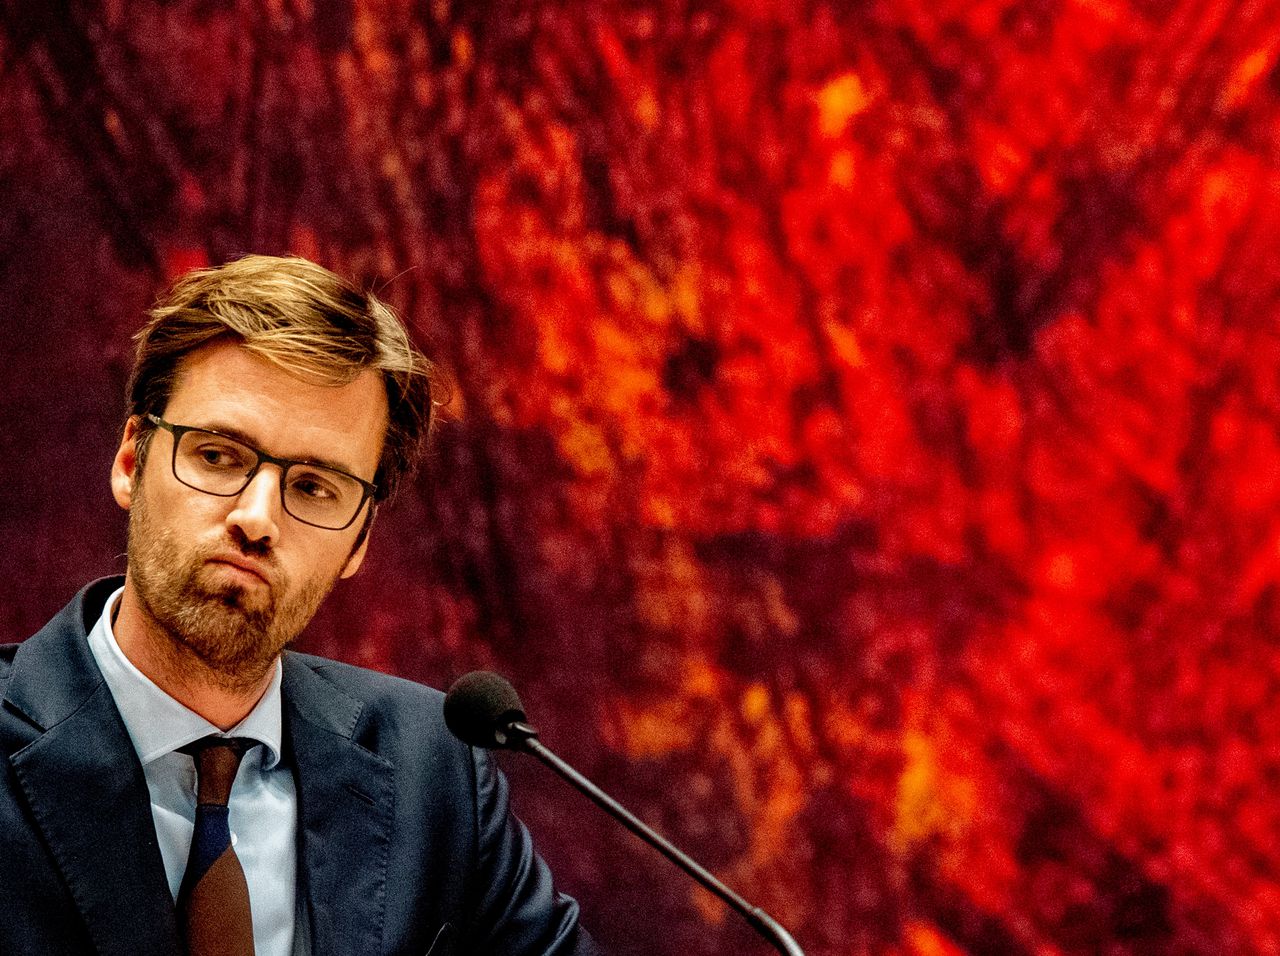 Kamerlid Sjoerd Sjoerdsma tijdens een debat in de Tweede Kamer in 2019.